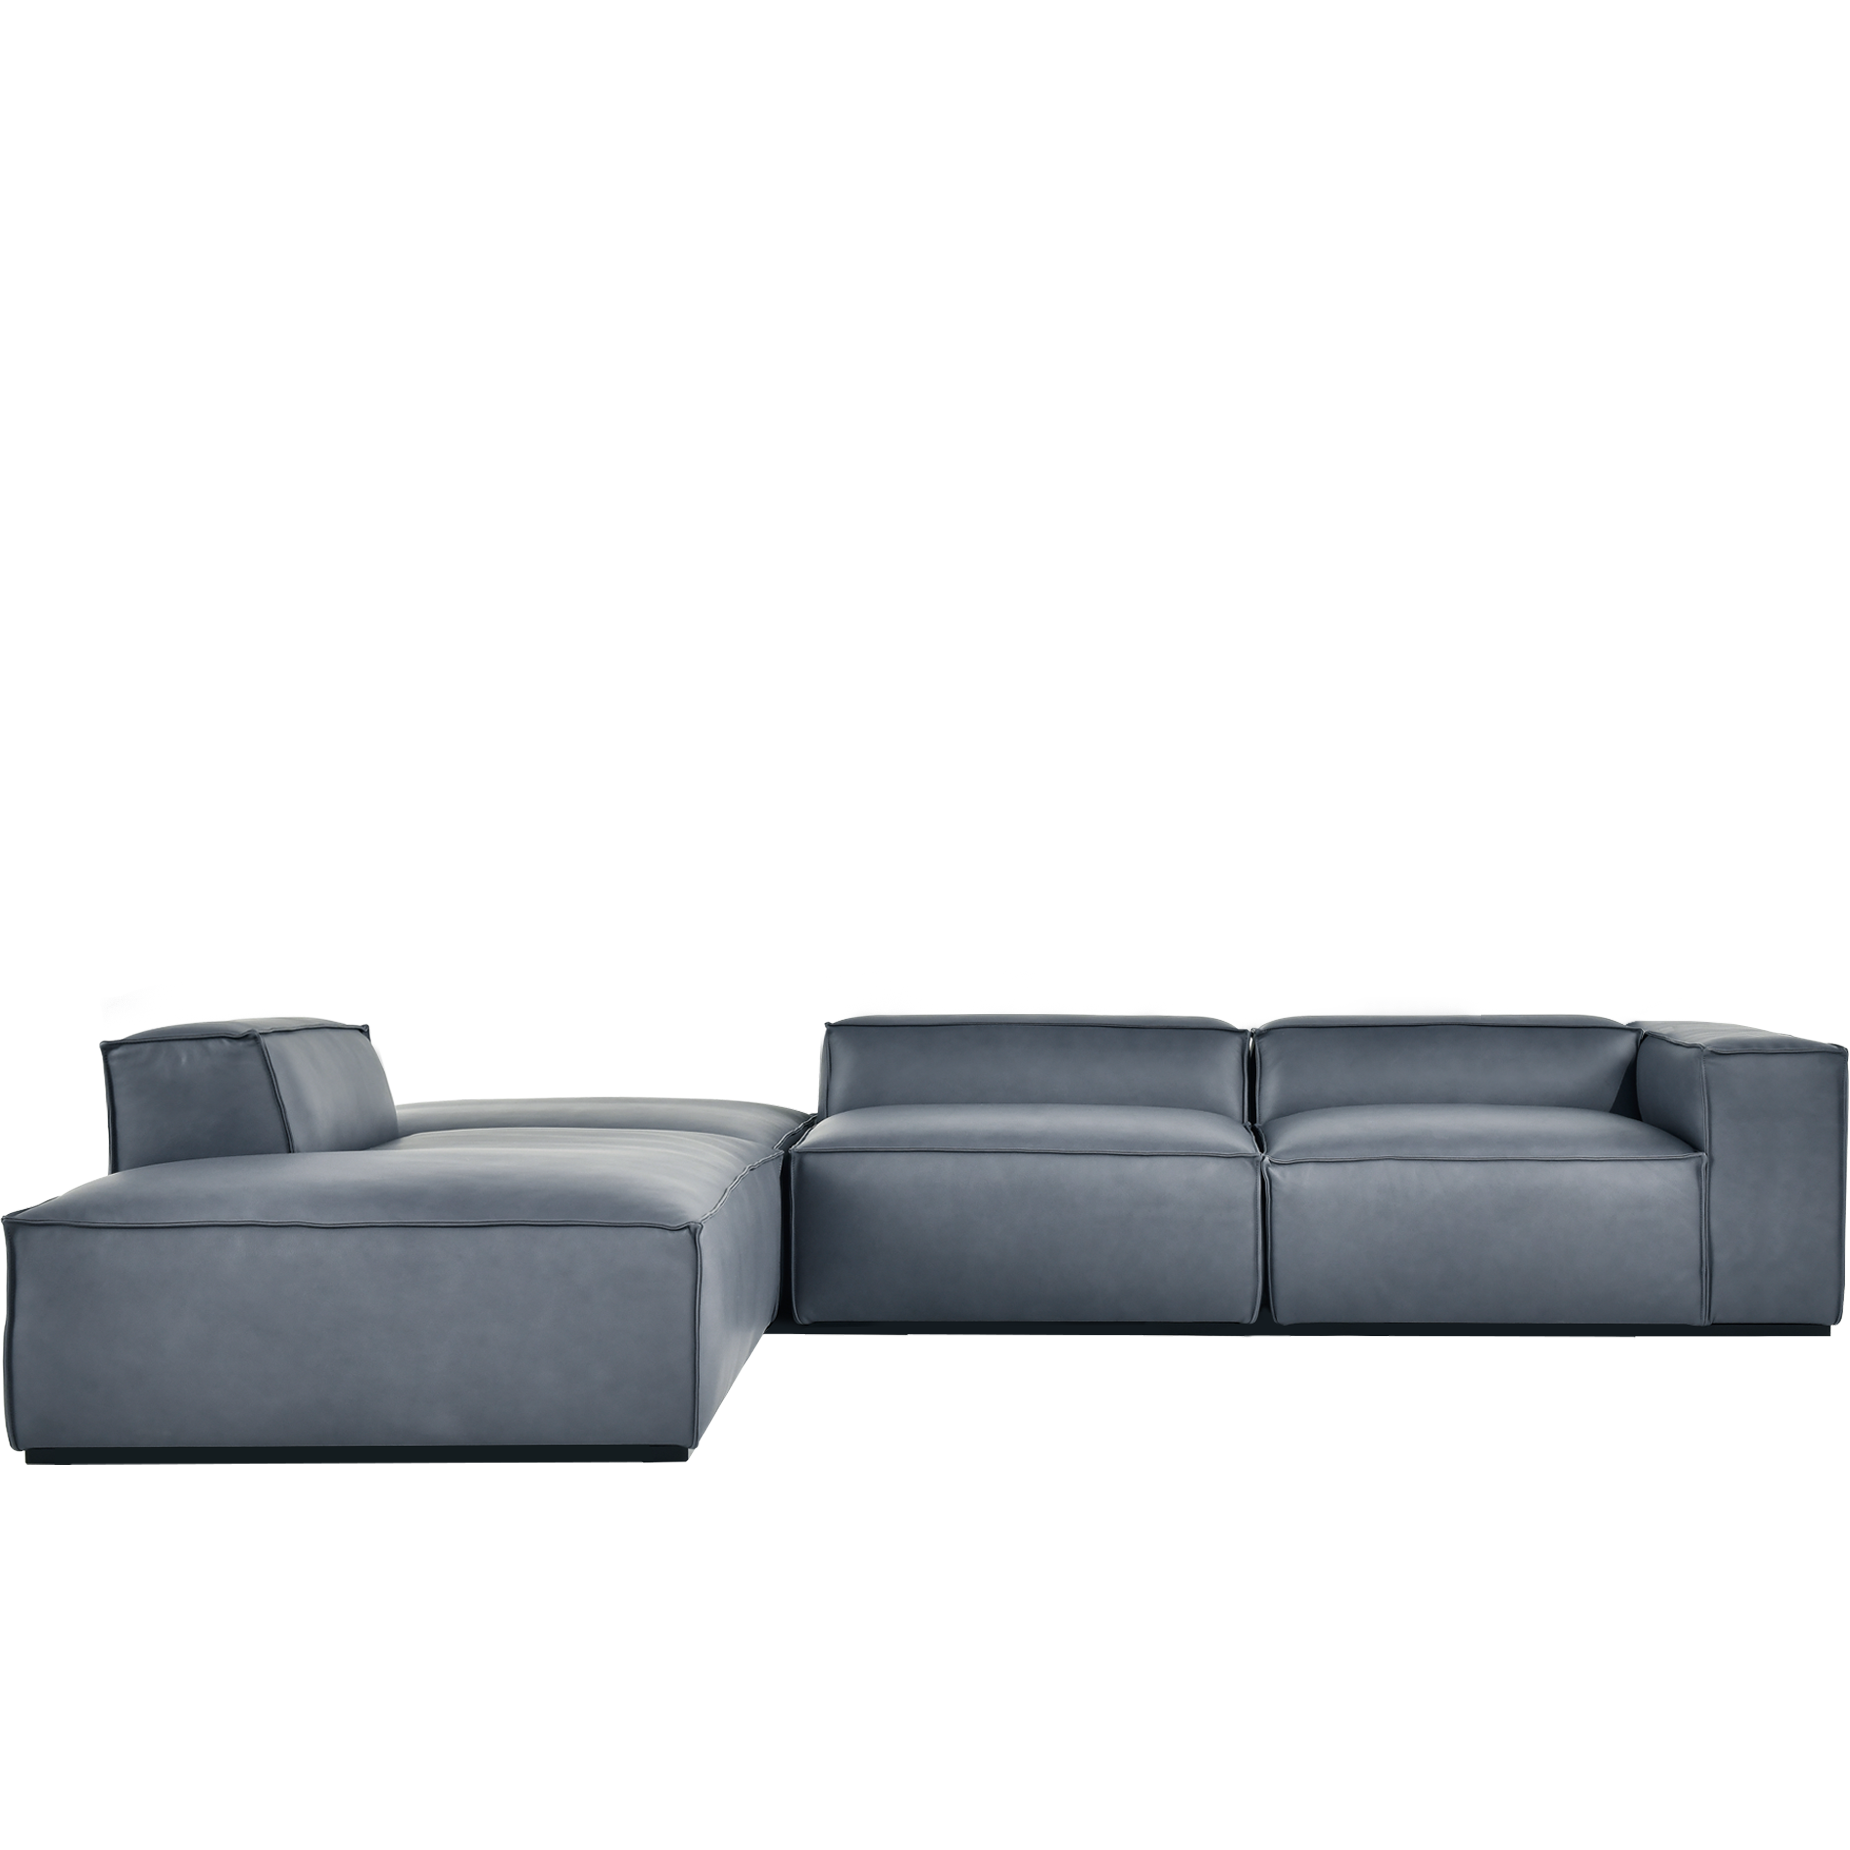 (주)도이치 DOICH ®    PEN16 modular corner couch sofa 도이치 펜16  4인 코너카우치 모듈소파  [4주 주문제작]